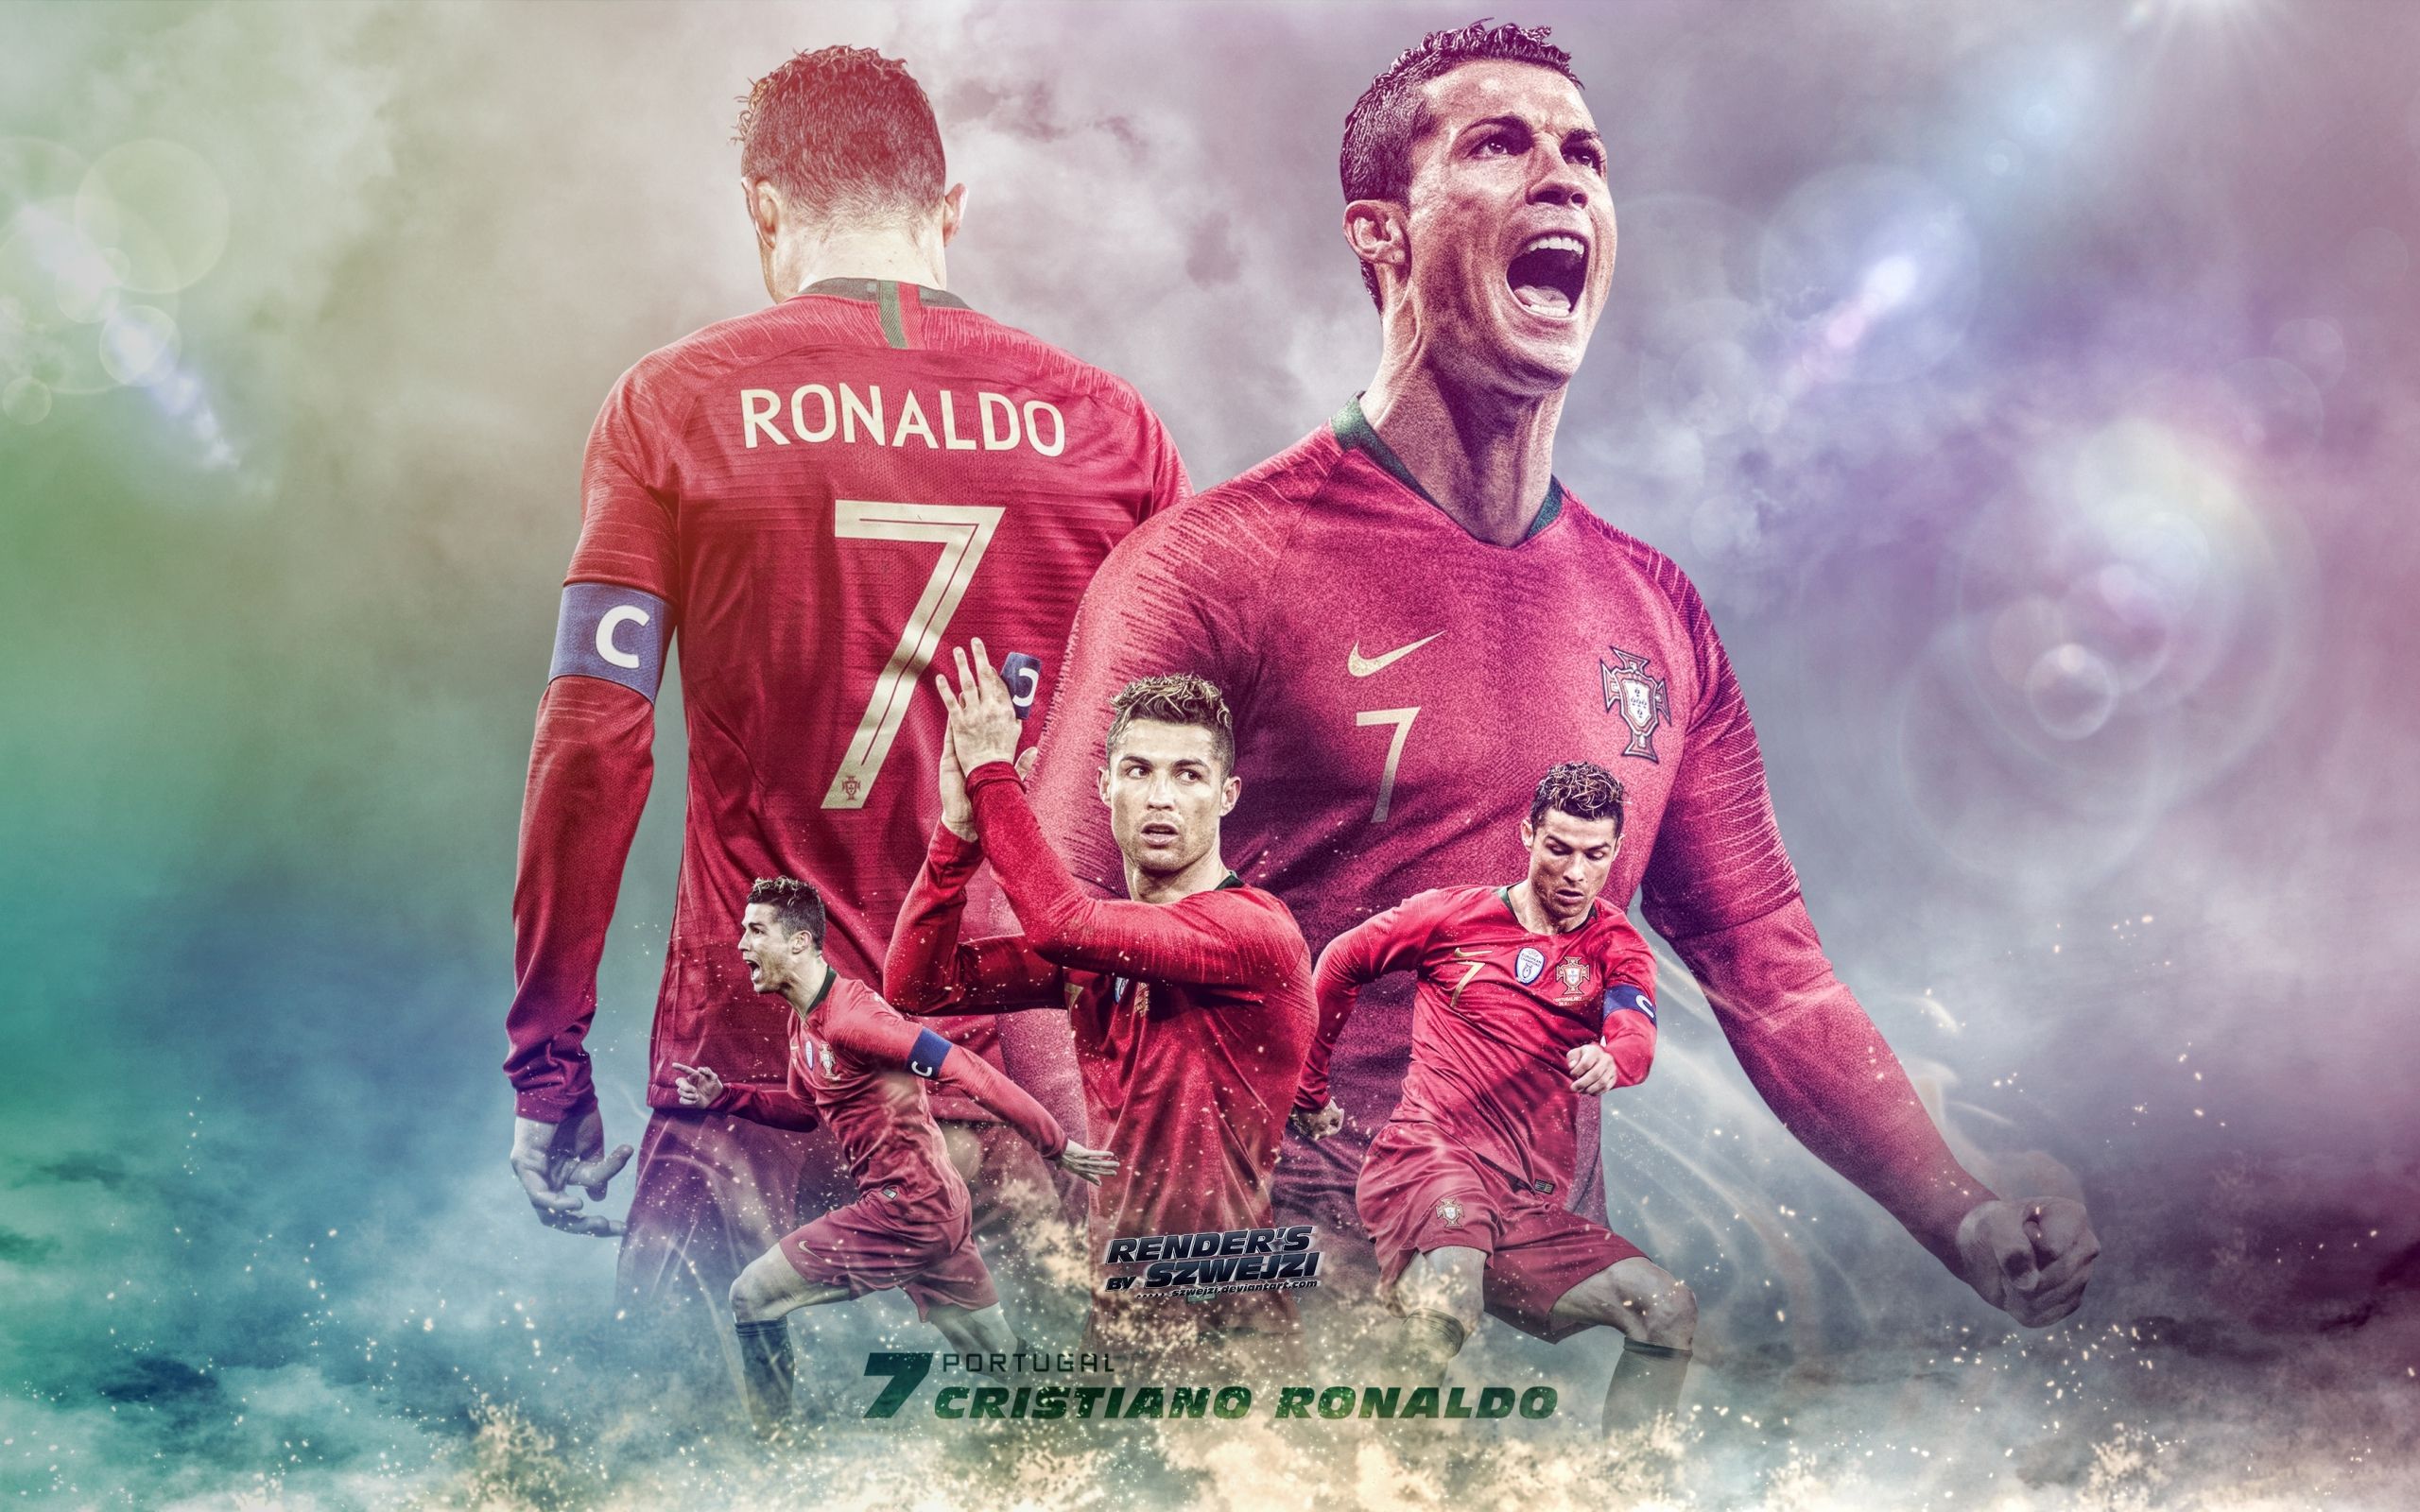 Wallpaper Cristiano Ronaldo